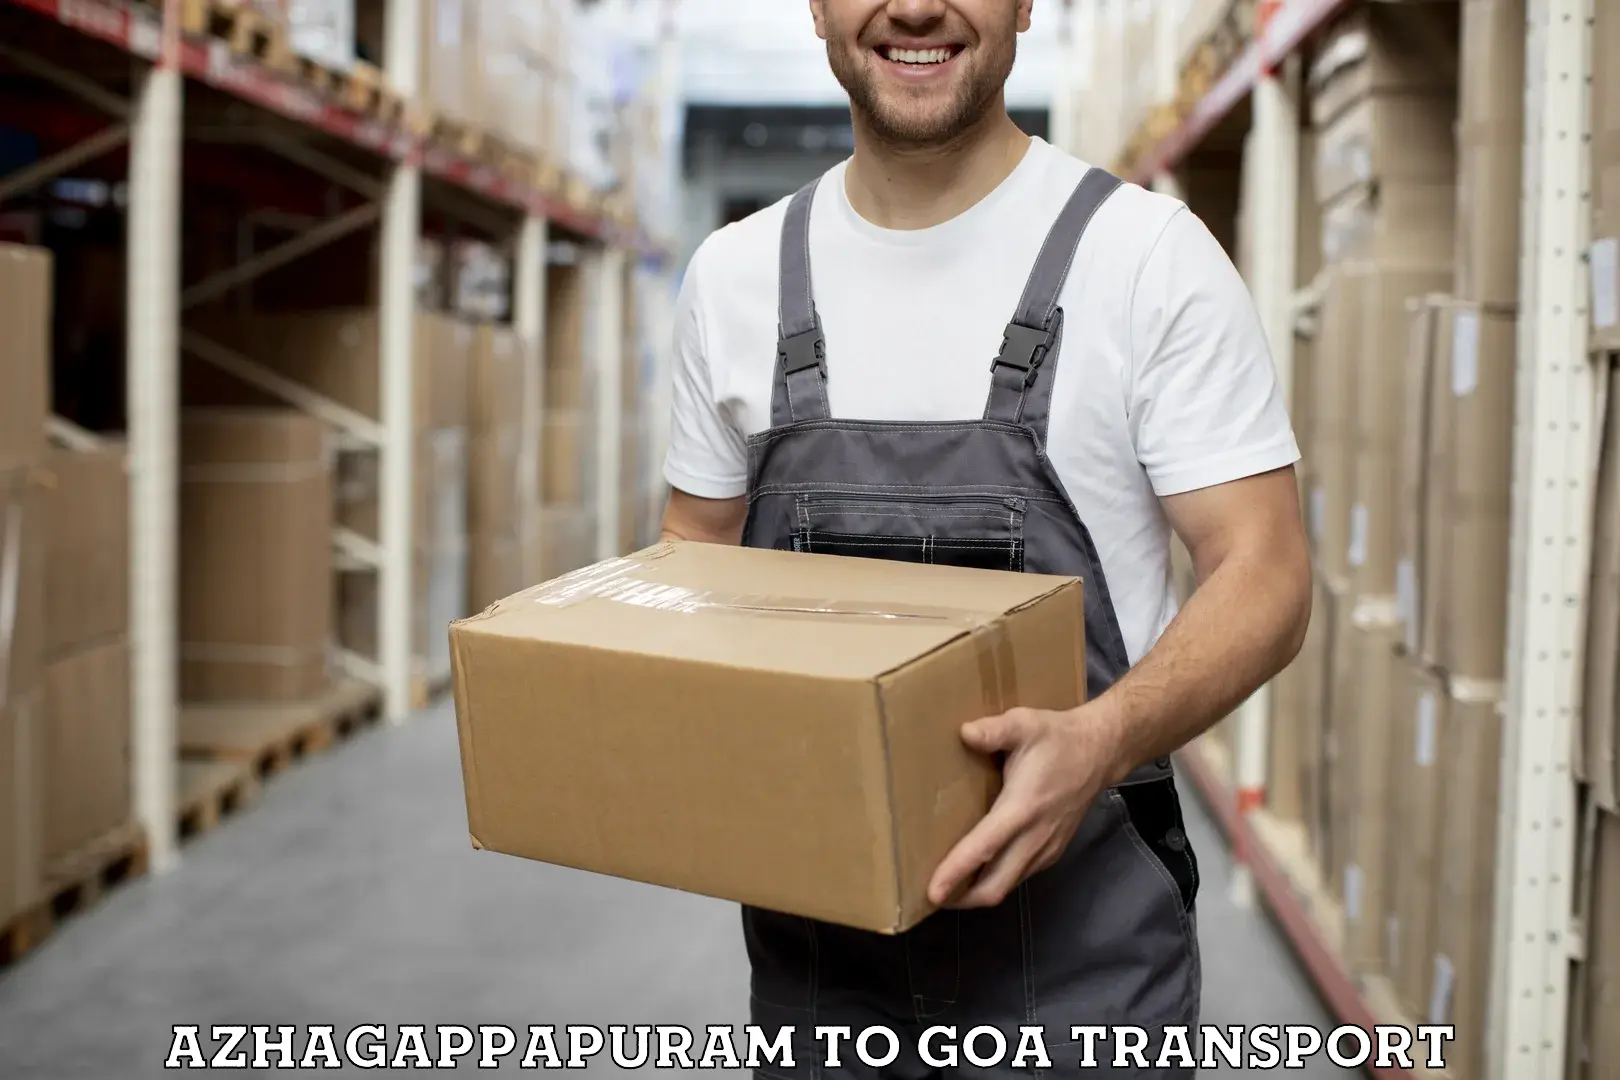 Intercity goods transport Azhagappapuram to Goa University